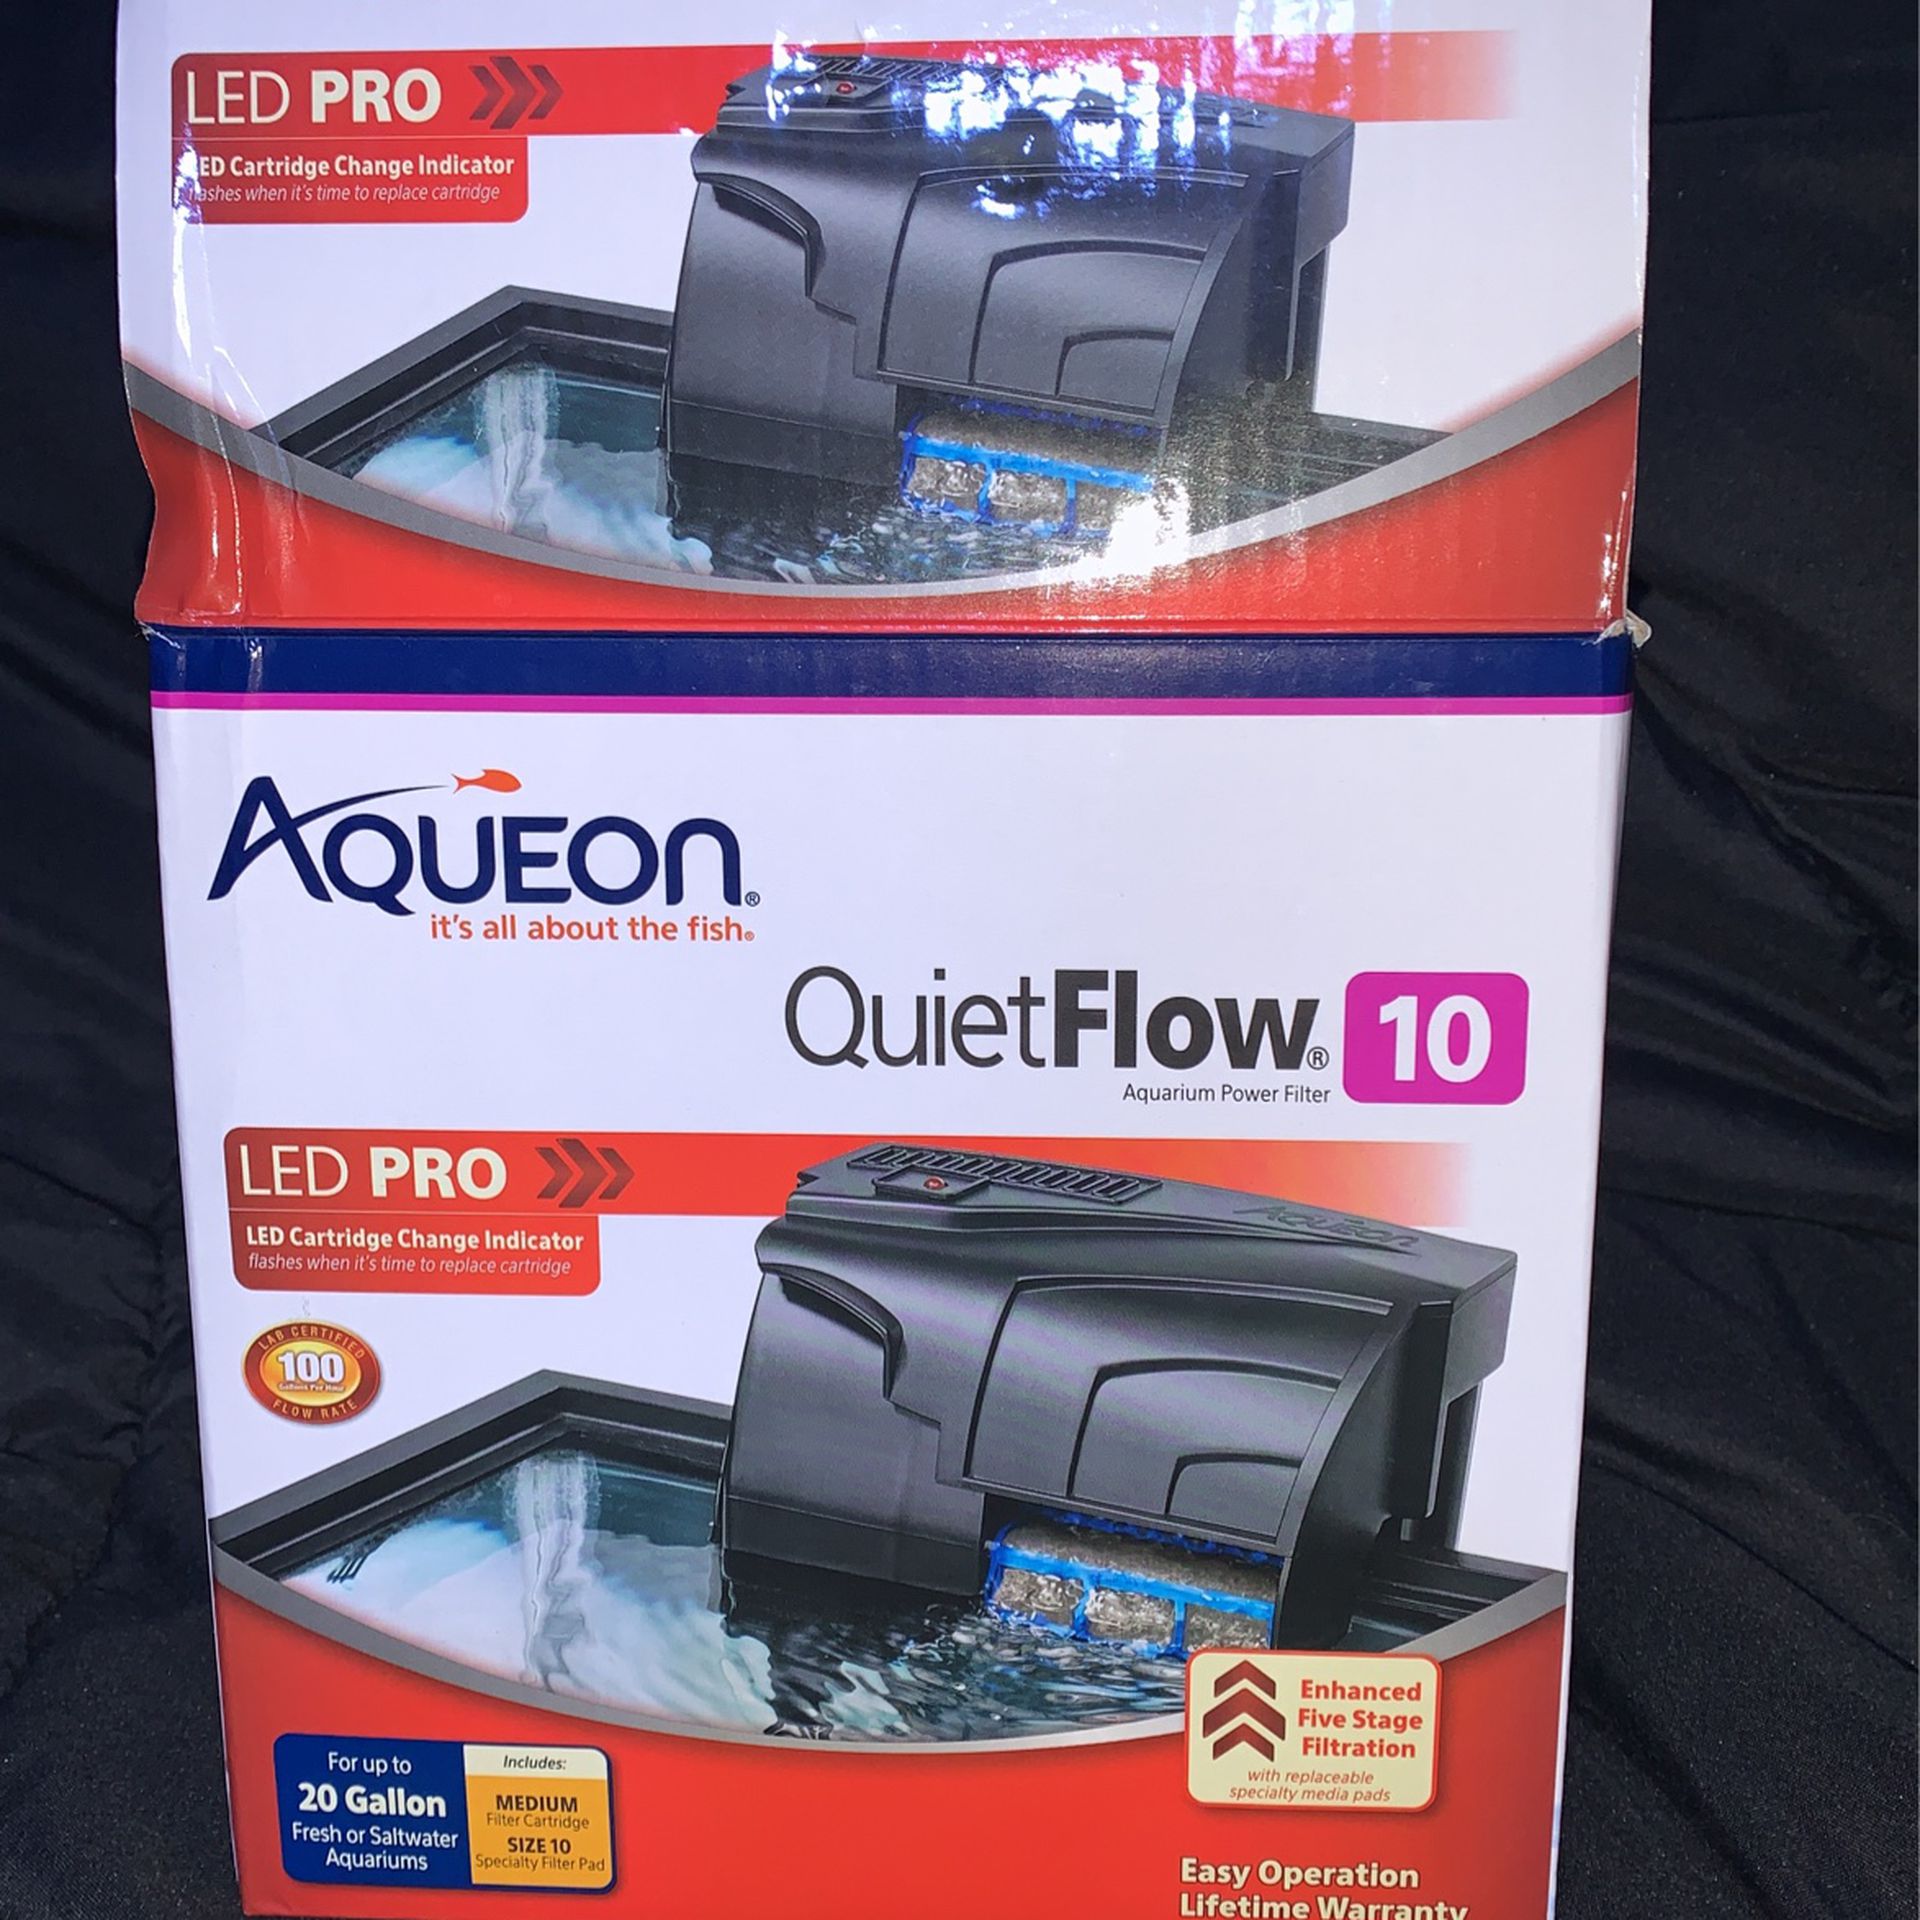 Aqueon Quiet Flow Aquarium Power Filter